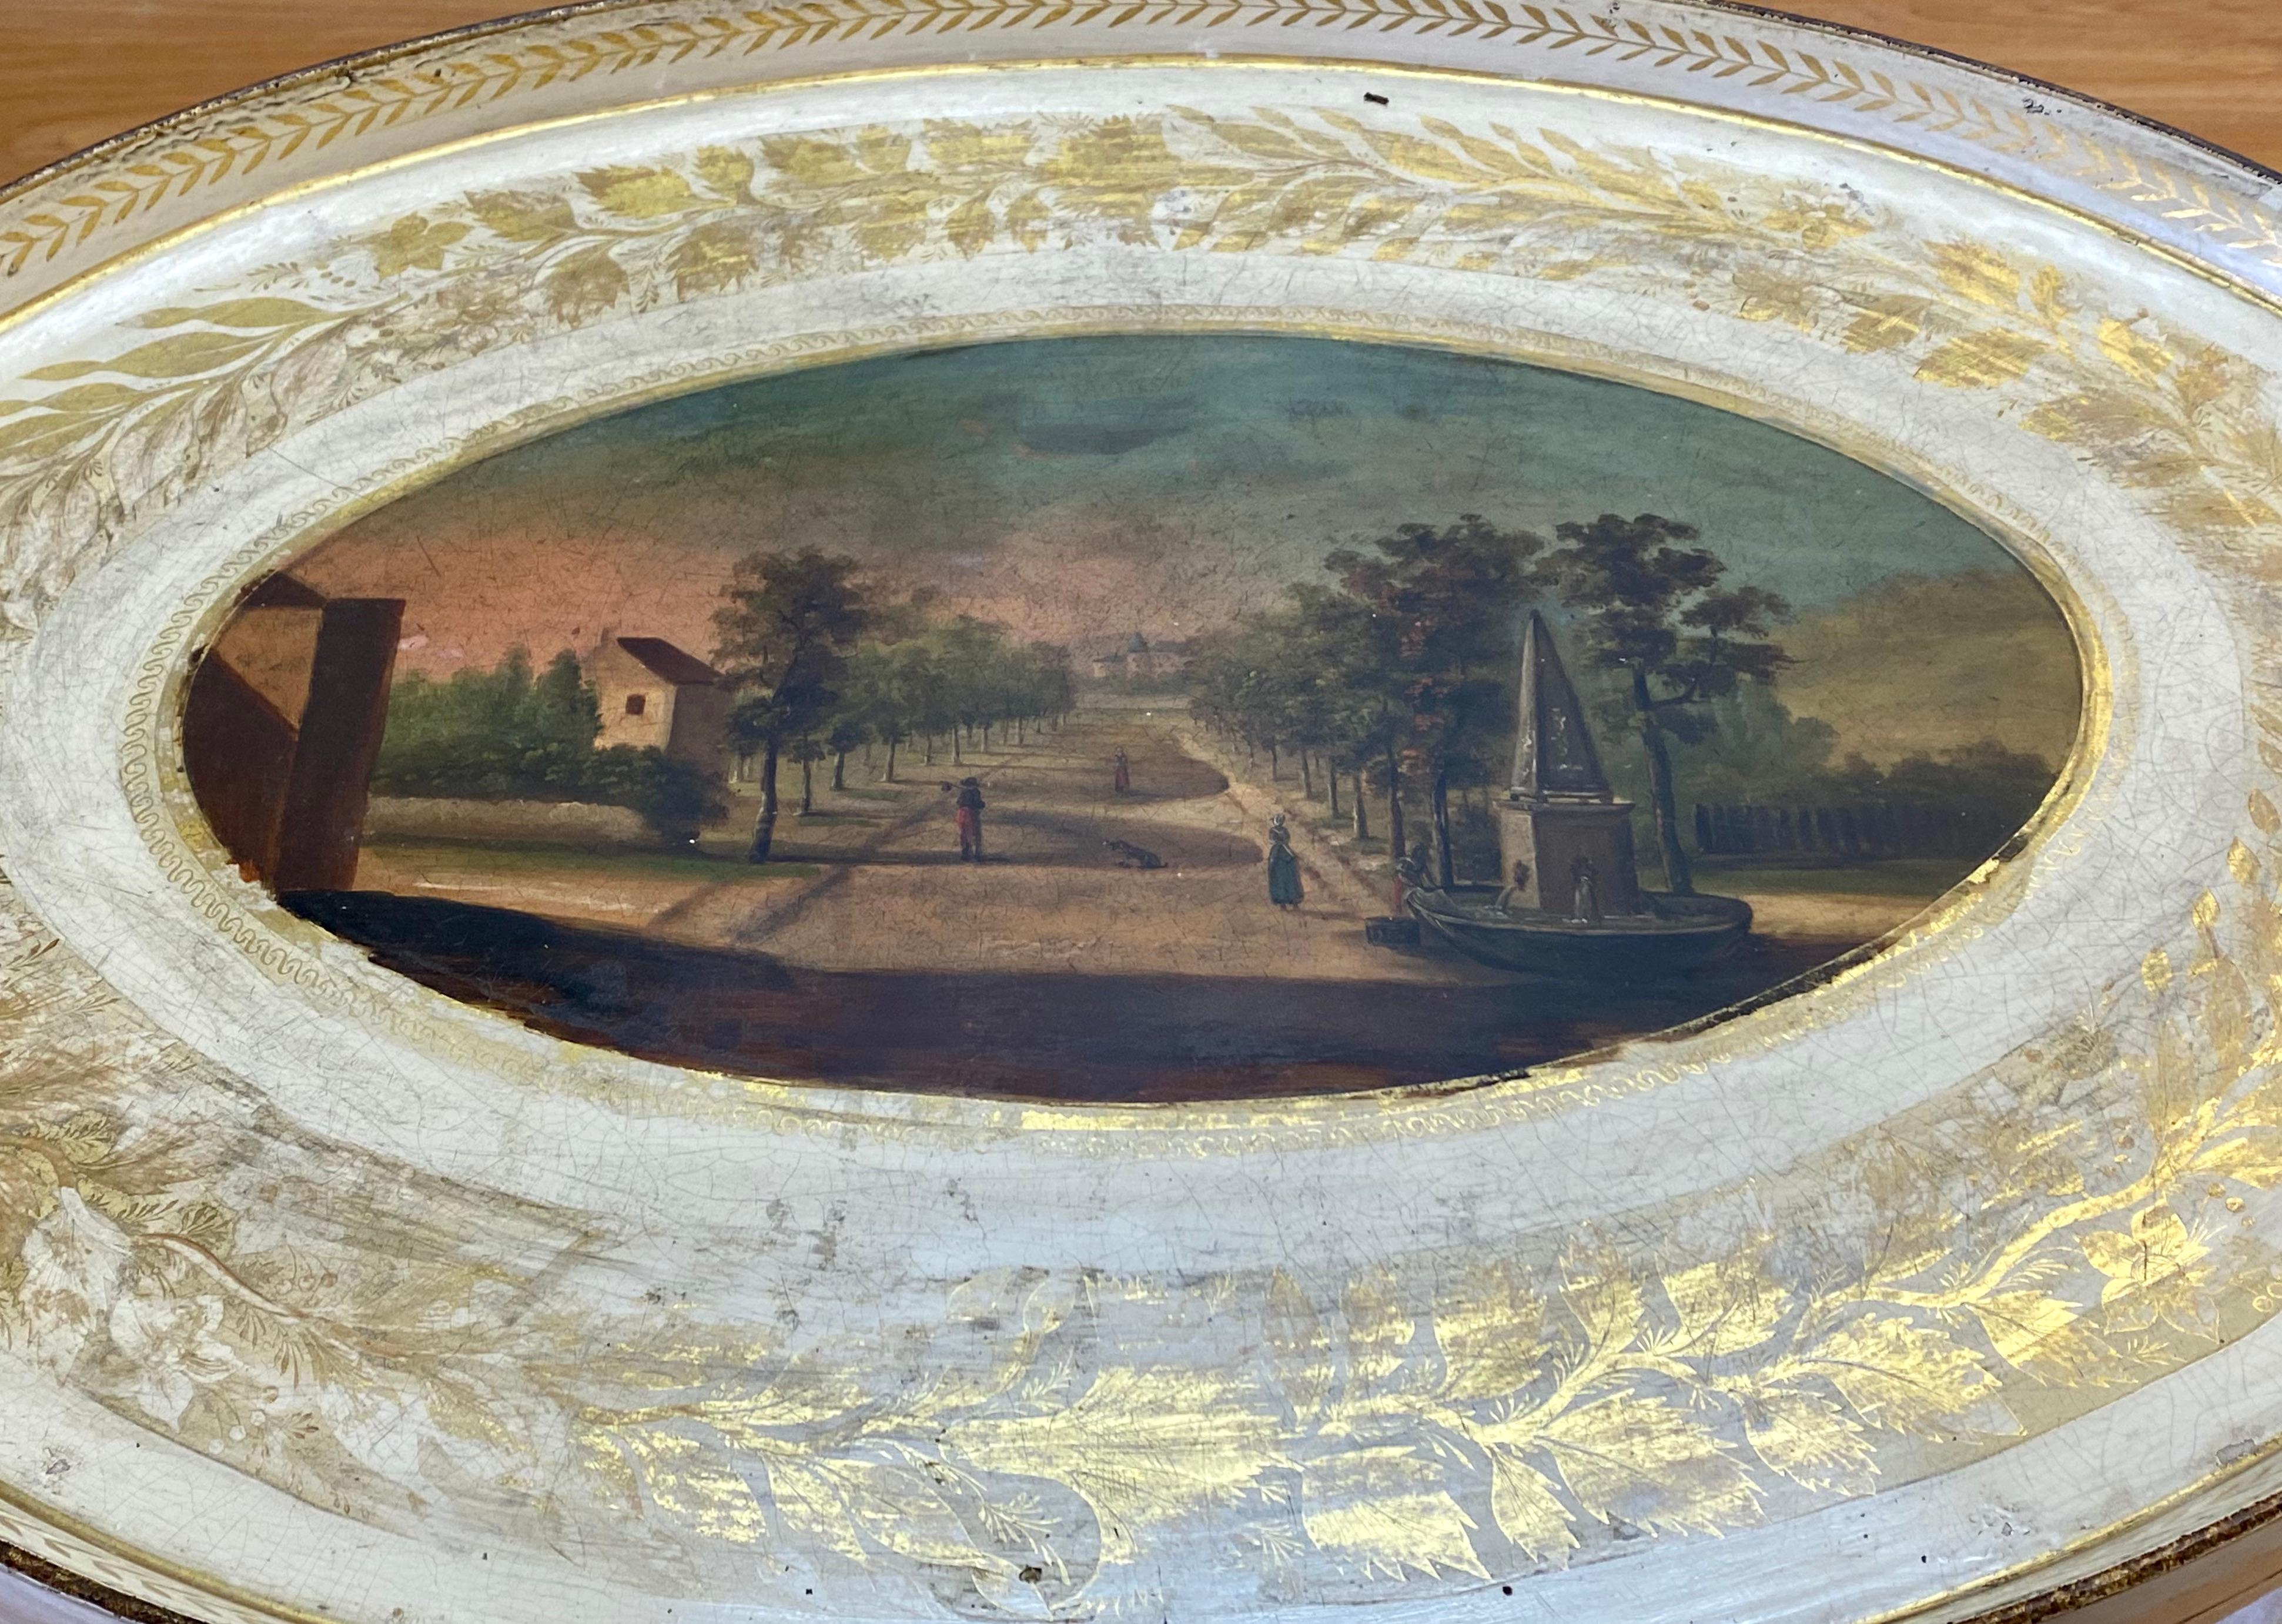 Scène de jardin européen peinte à la main sur un plateau en métal sur pied avec insert en verre, vers 1940.

Une belle scène peinte à la main avec d'amples restes de la couronne dorée entourant le plateau.

Un insert en verre est inclus

Le